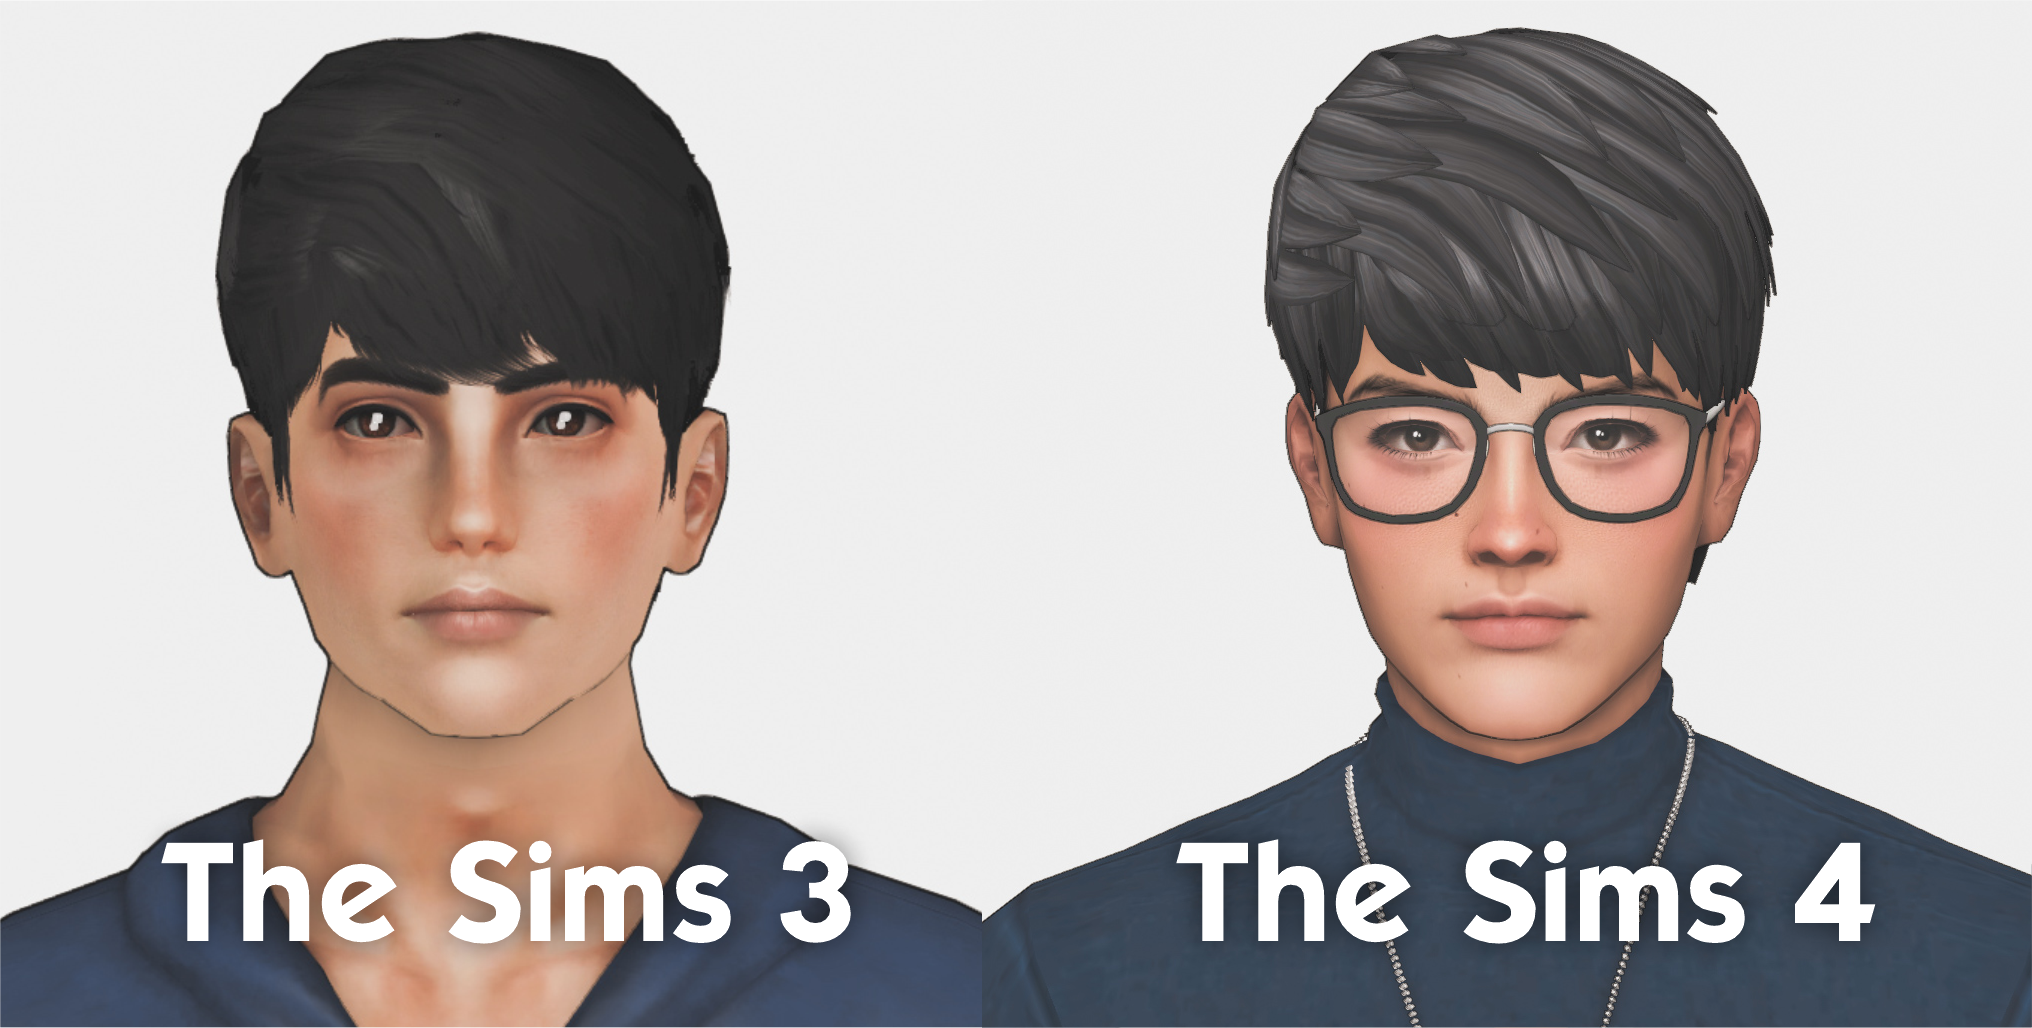 Atlas Hair (TS3 to TS4) - The Sims 4 Create a Sim - CurseForge